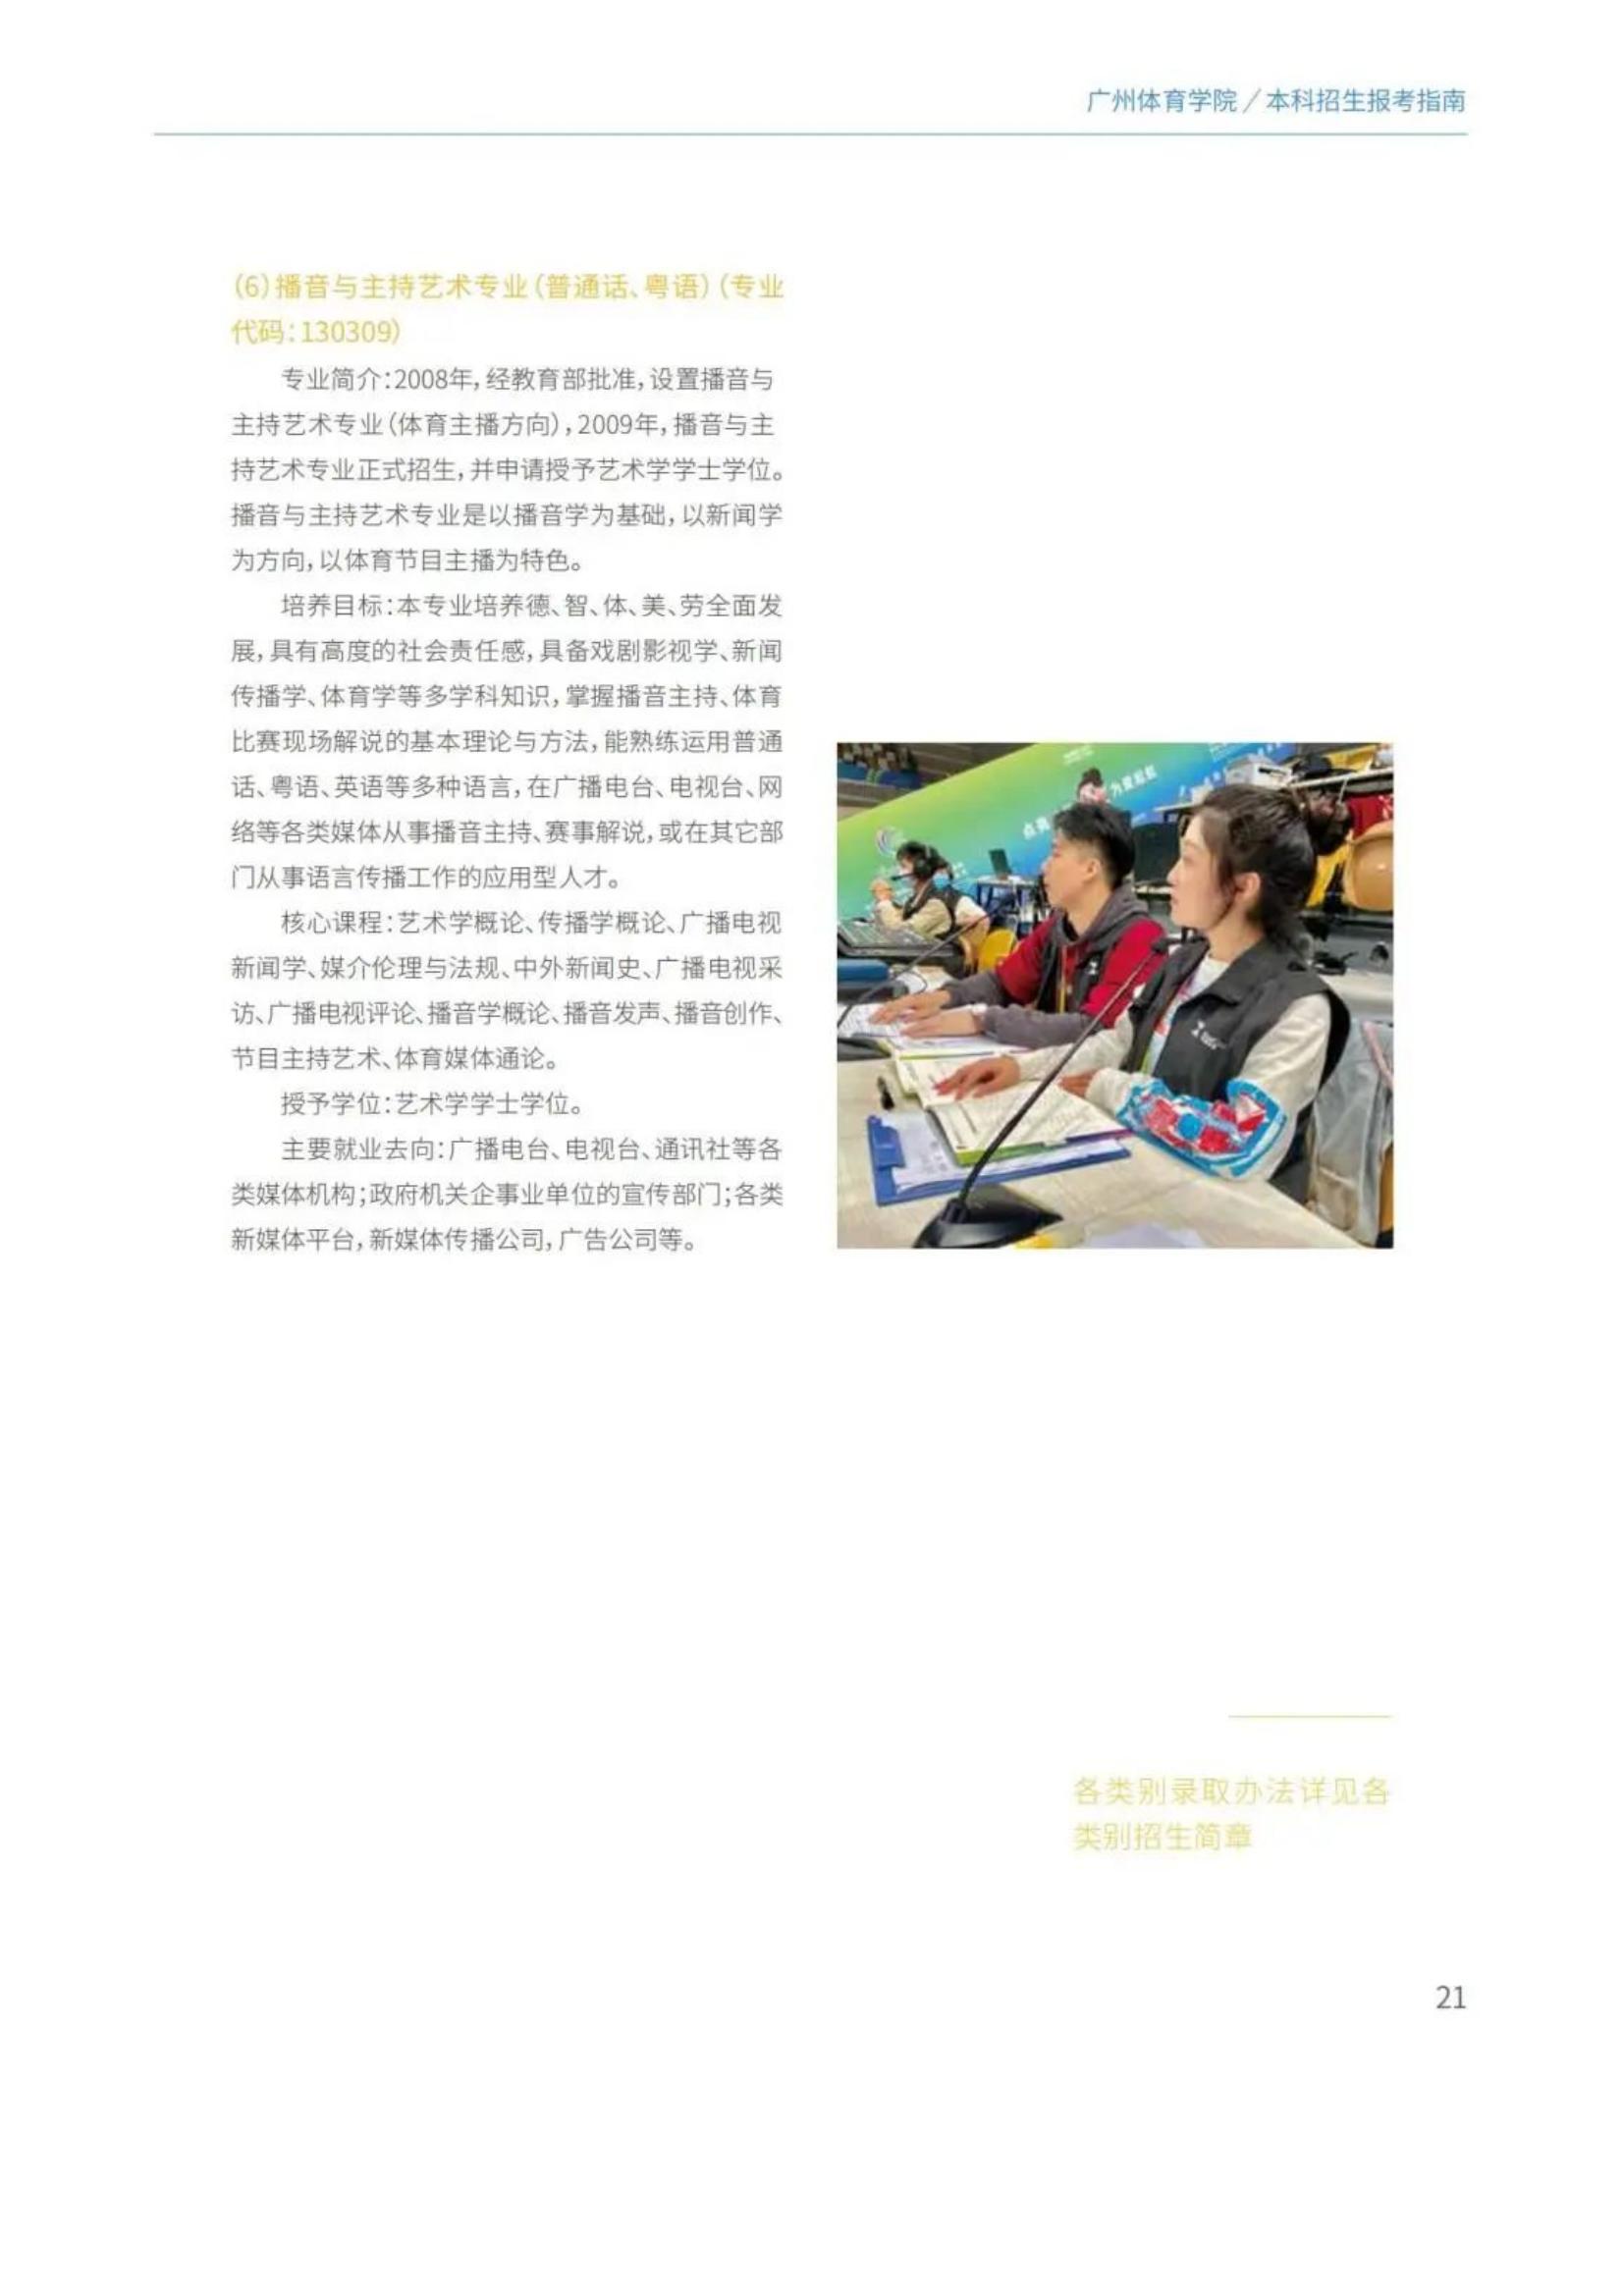 广州体育学院2022年报考指南发布_23.jpg